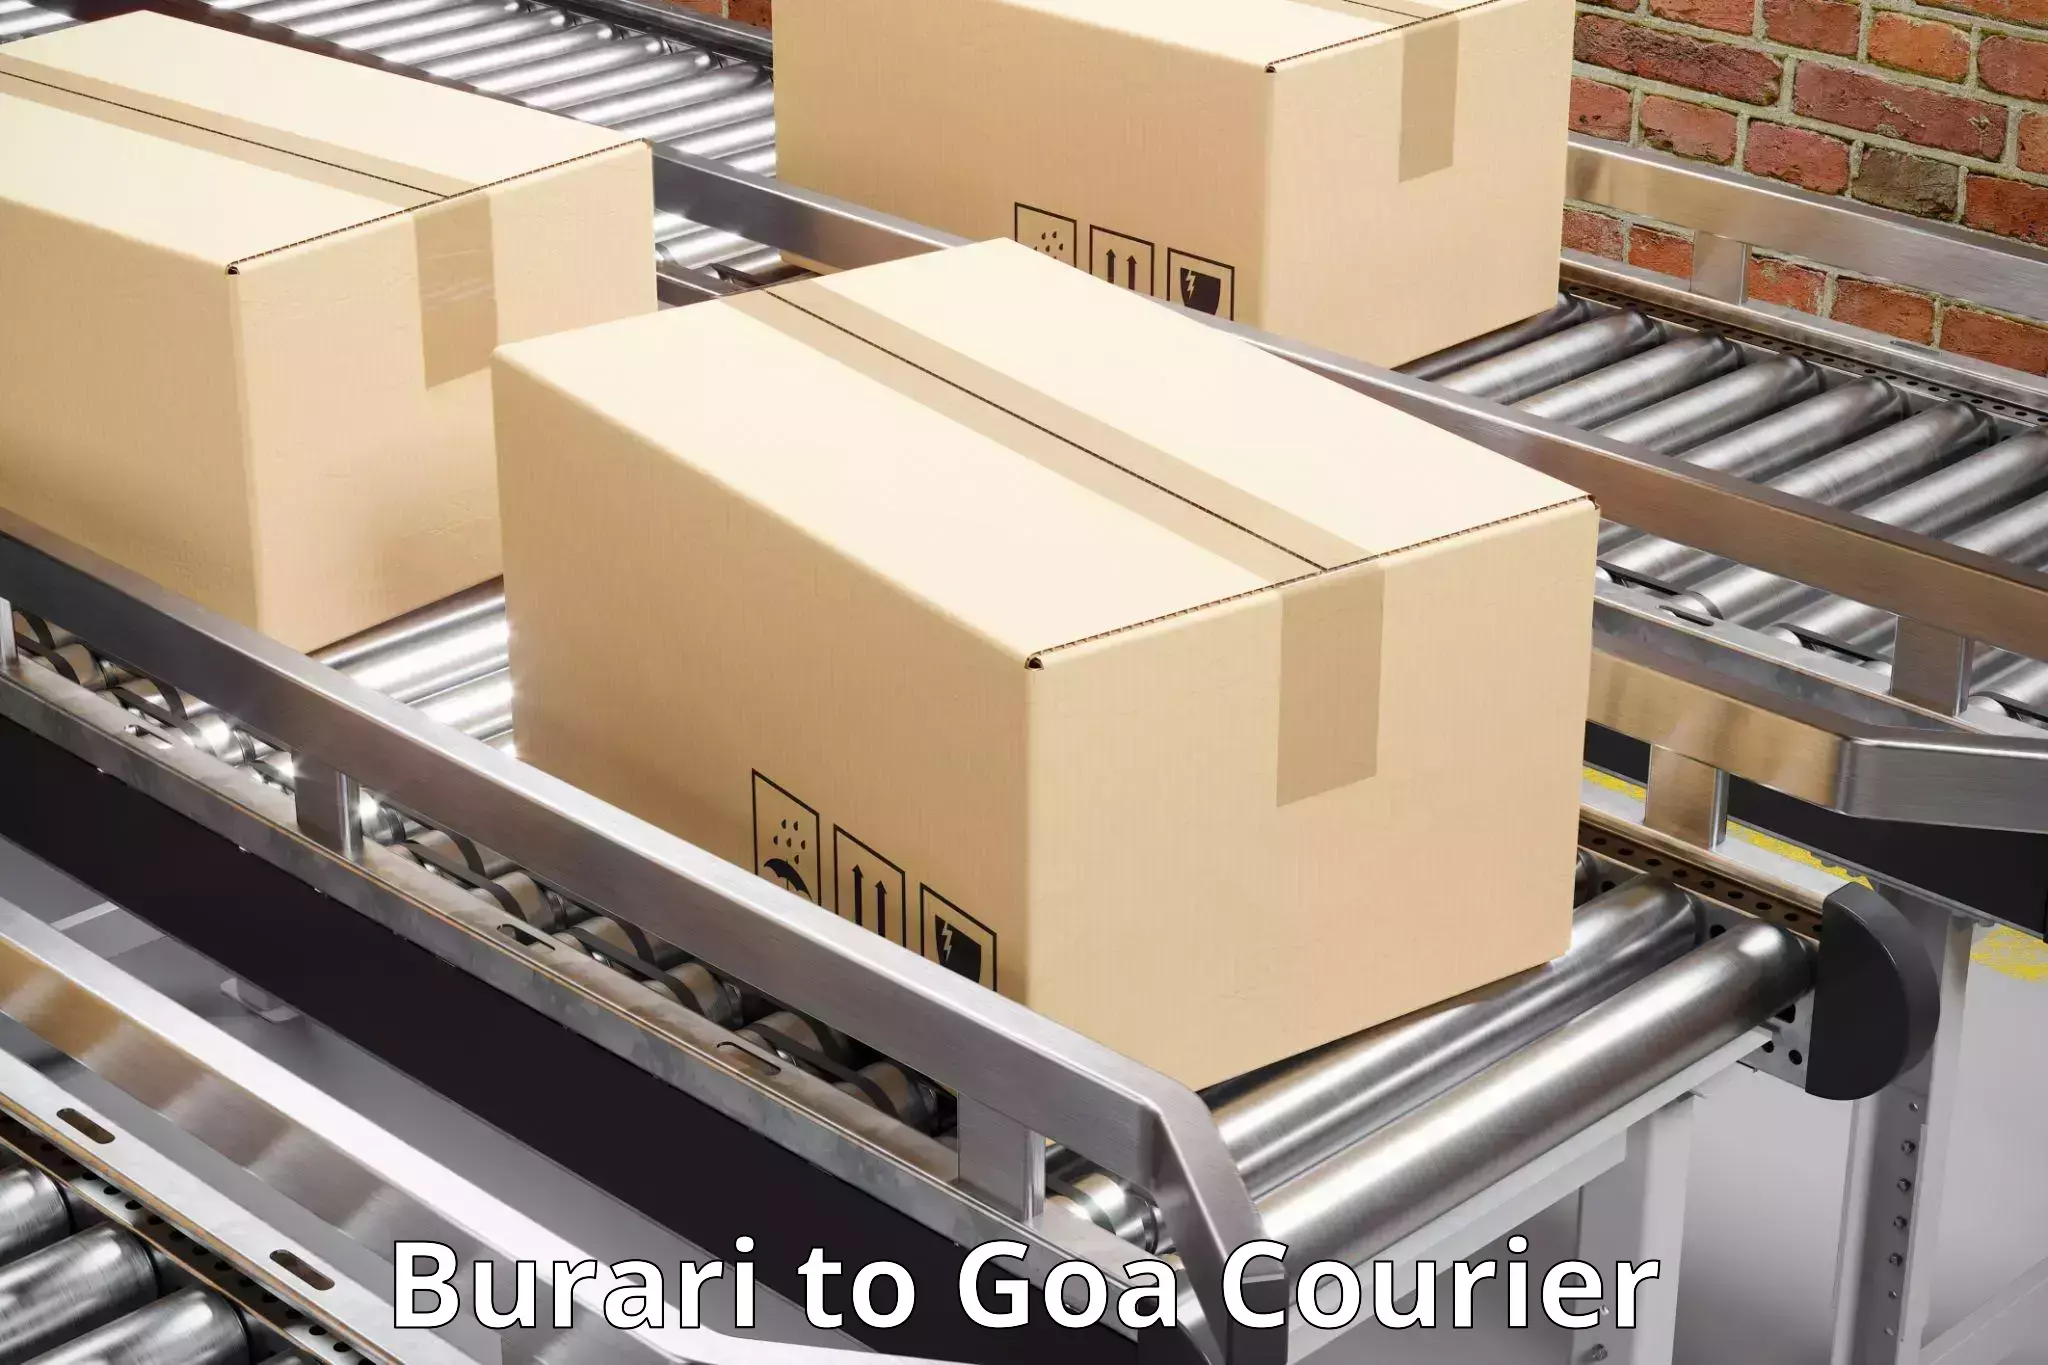 Digital courier platforms Burari to Goa